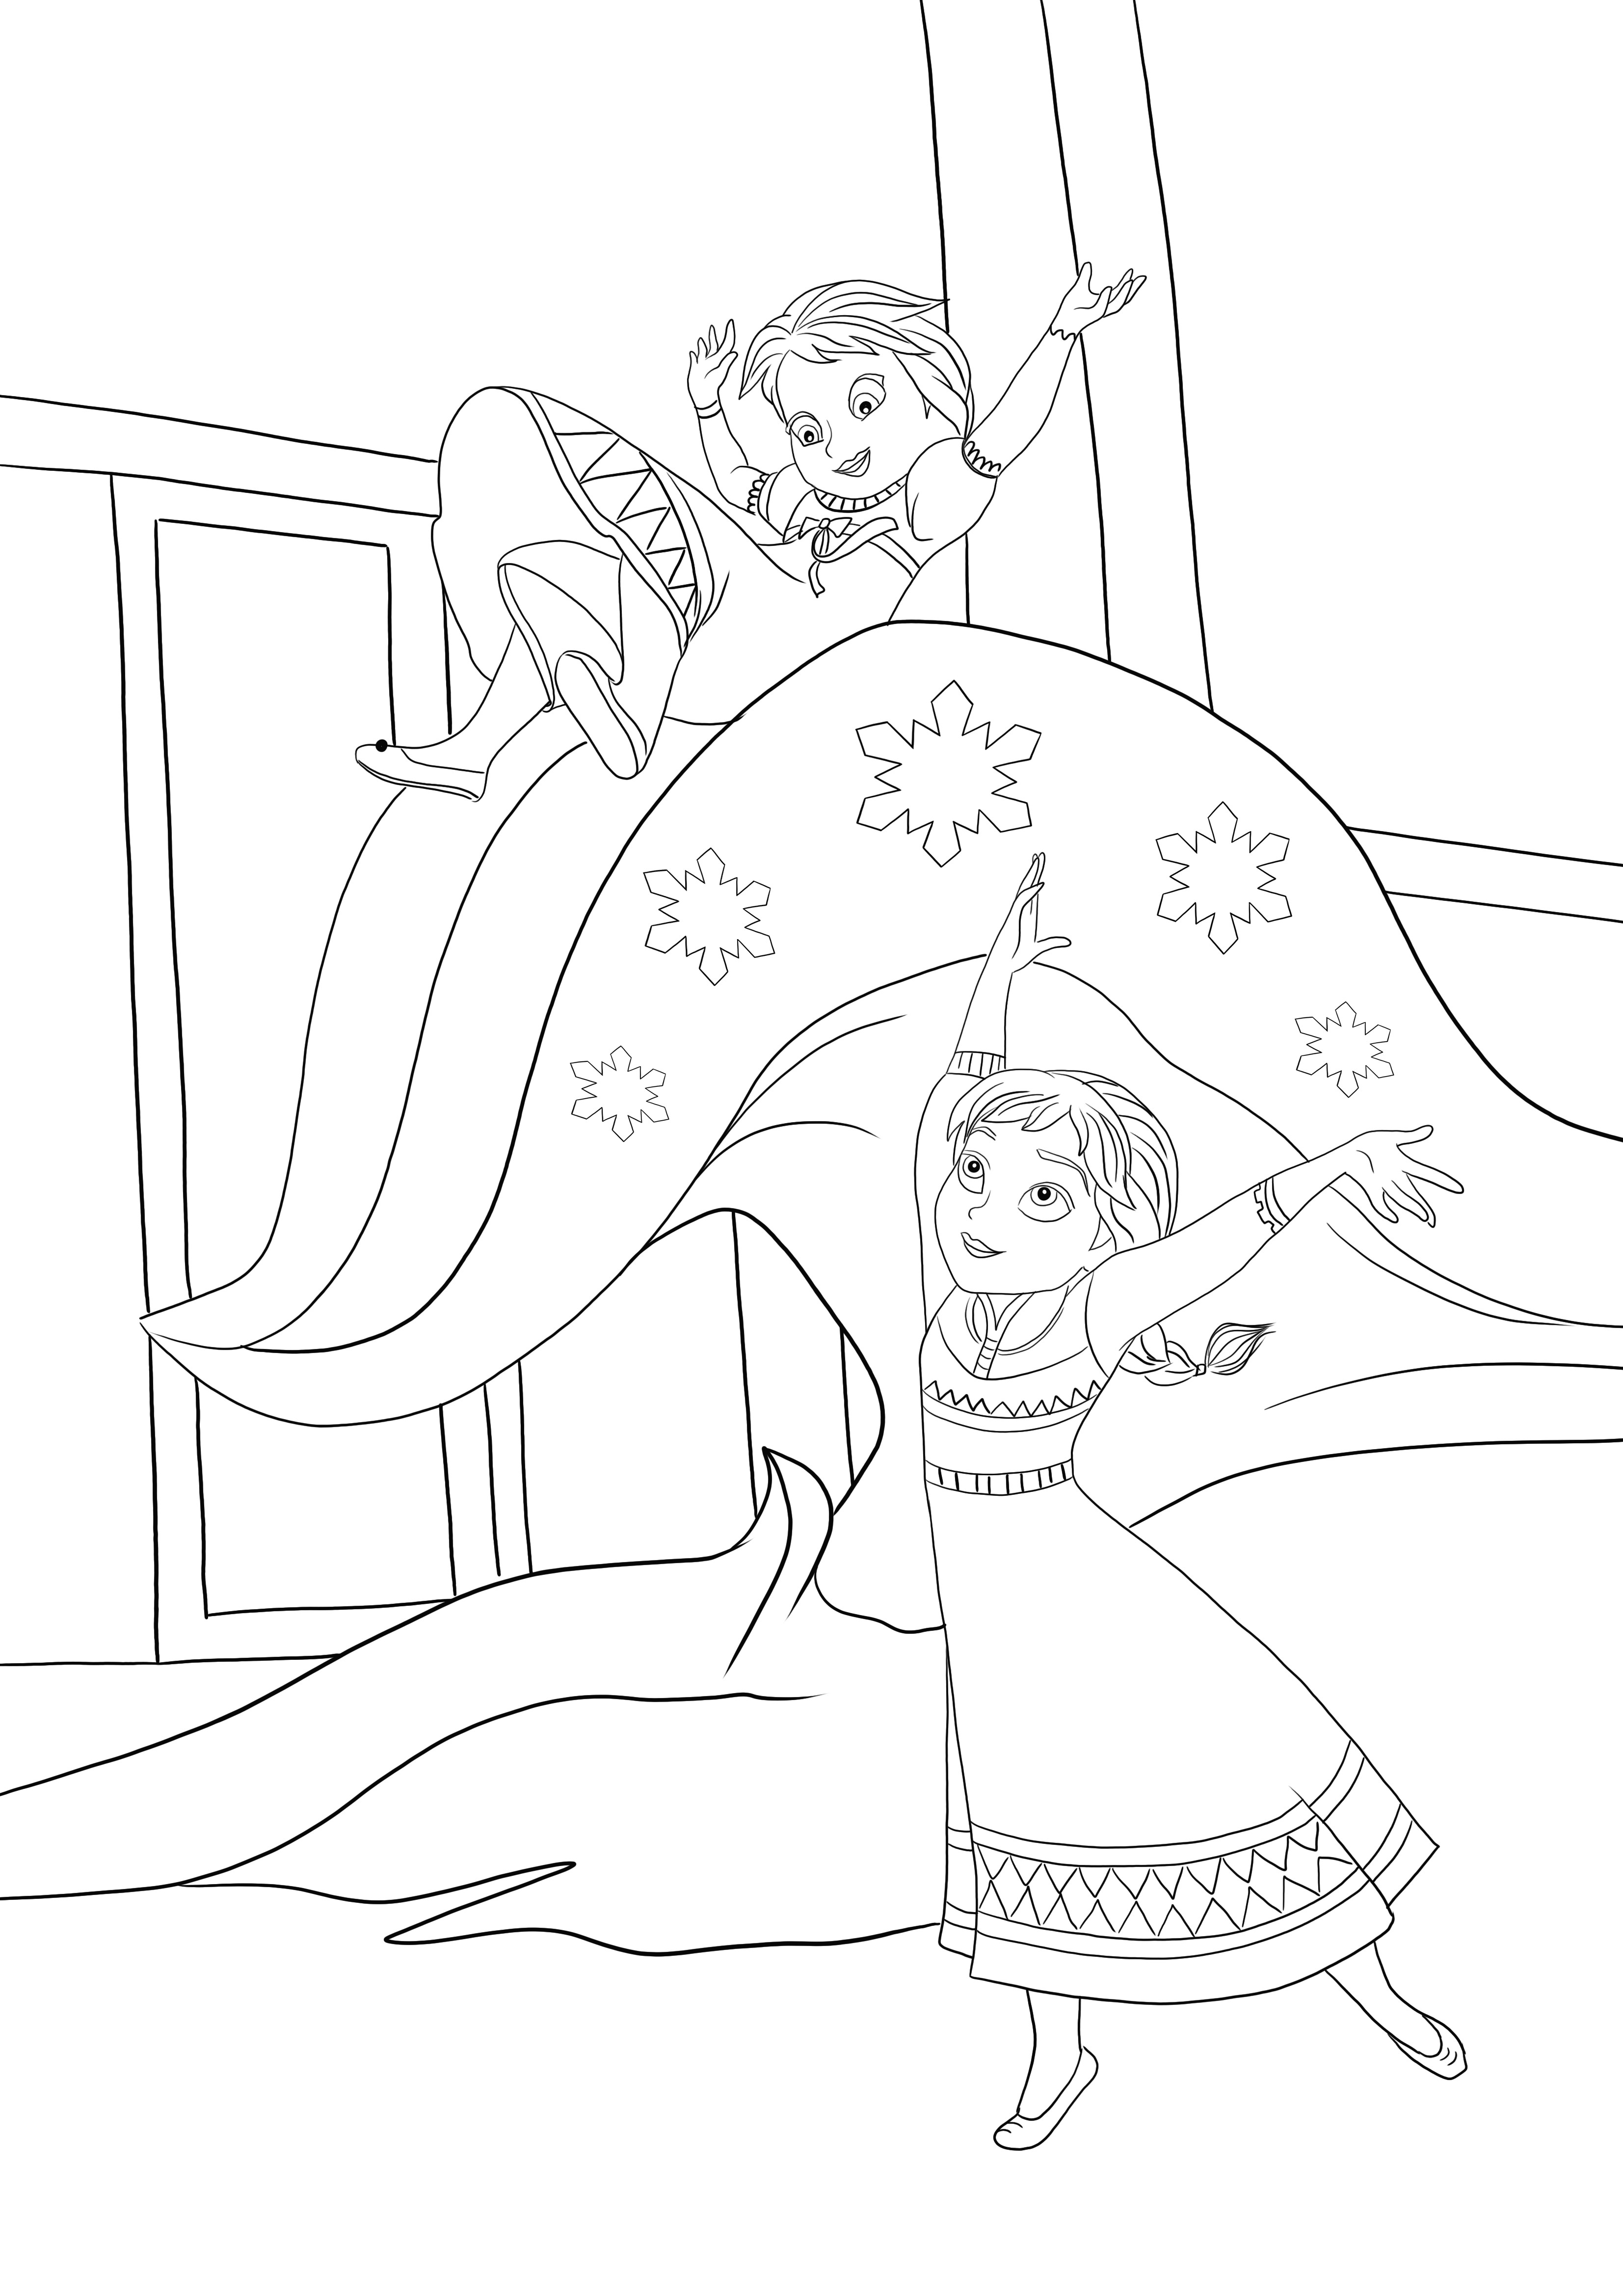 La piccola Elsa usa i suoi poteri di ghiaccio con Anna per il download gratuito e l'immagine da colorare